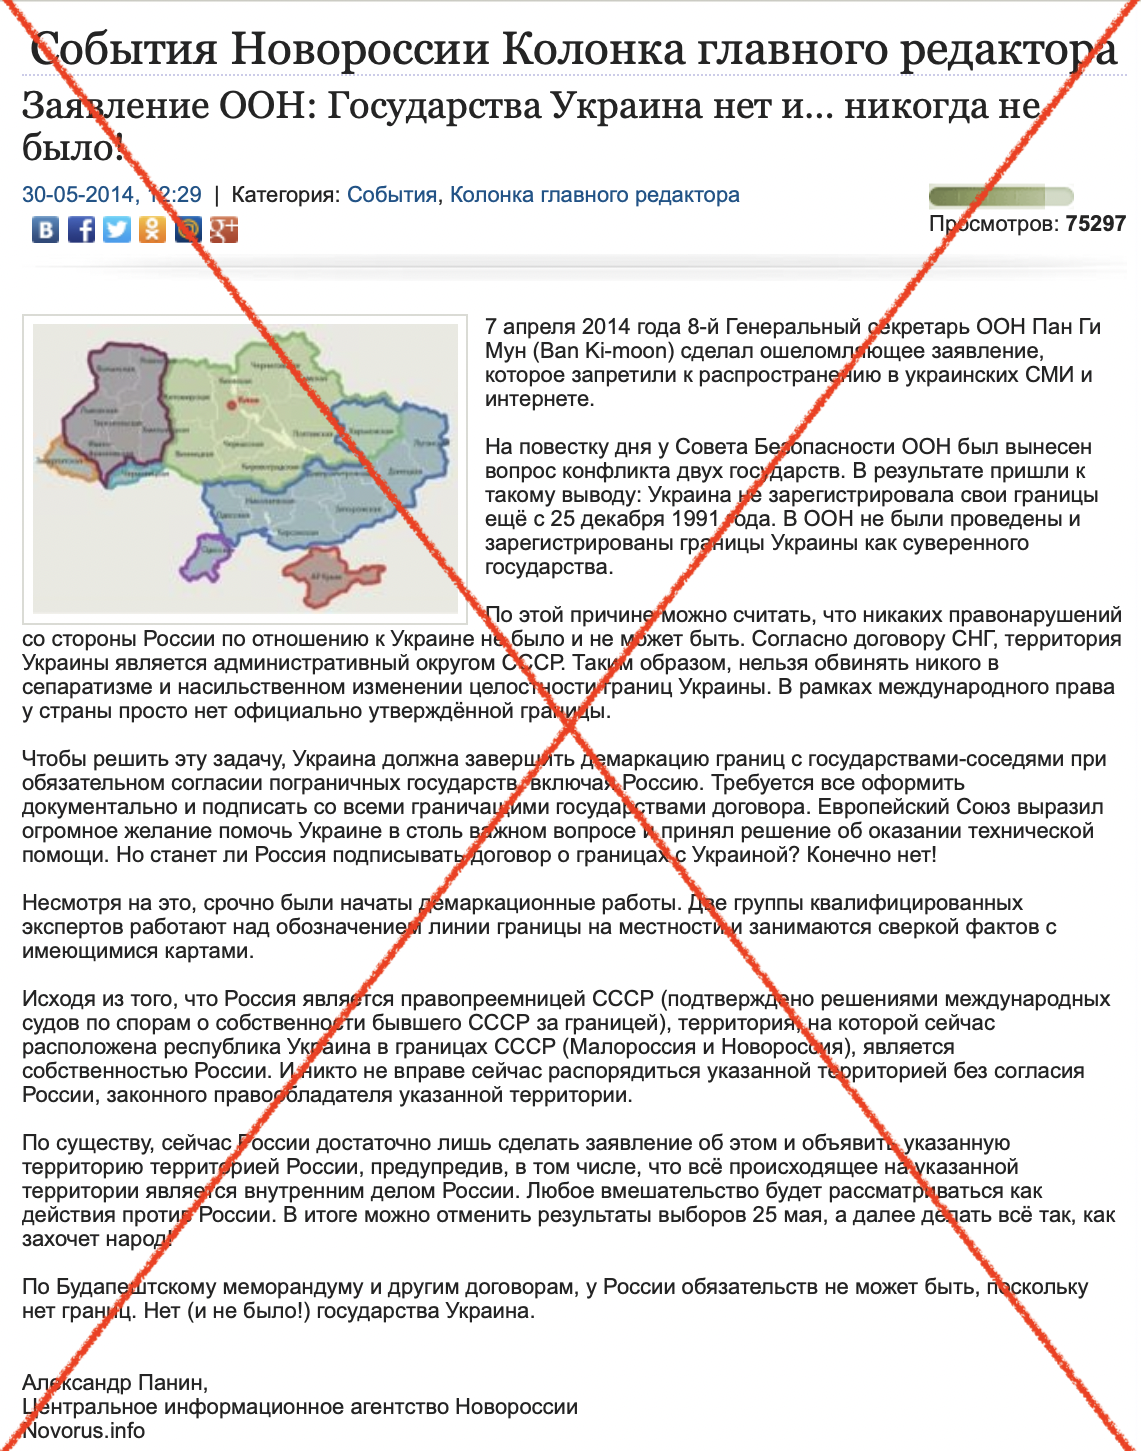 Как возник фейк о том, что государства Украина не существует